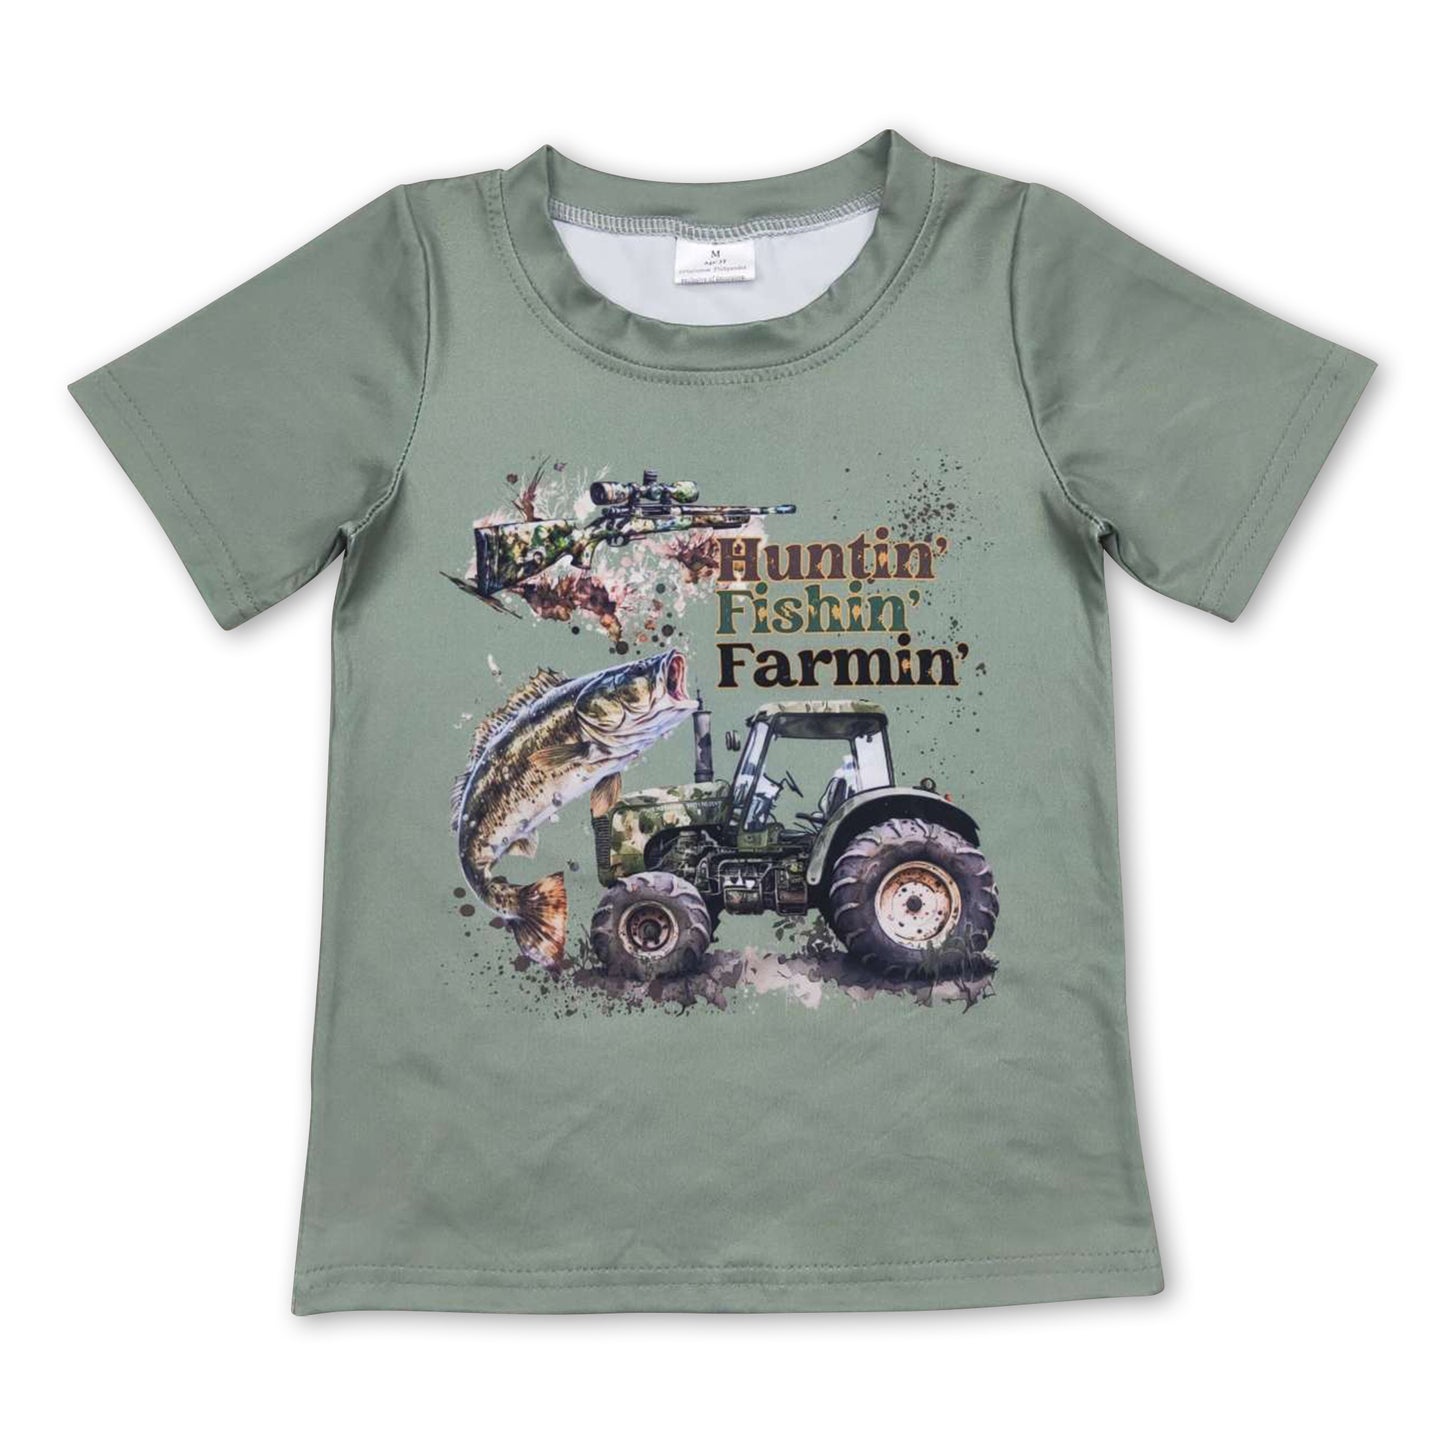 Huntin' fishin' farmin' short sleeves kids boy shirt